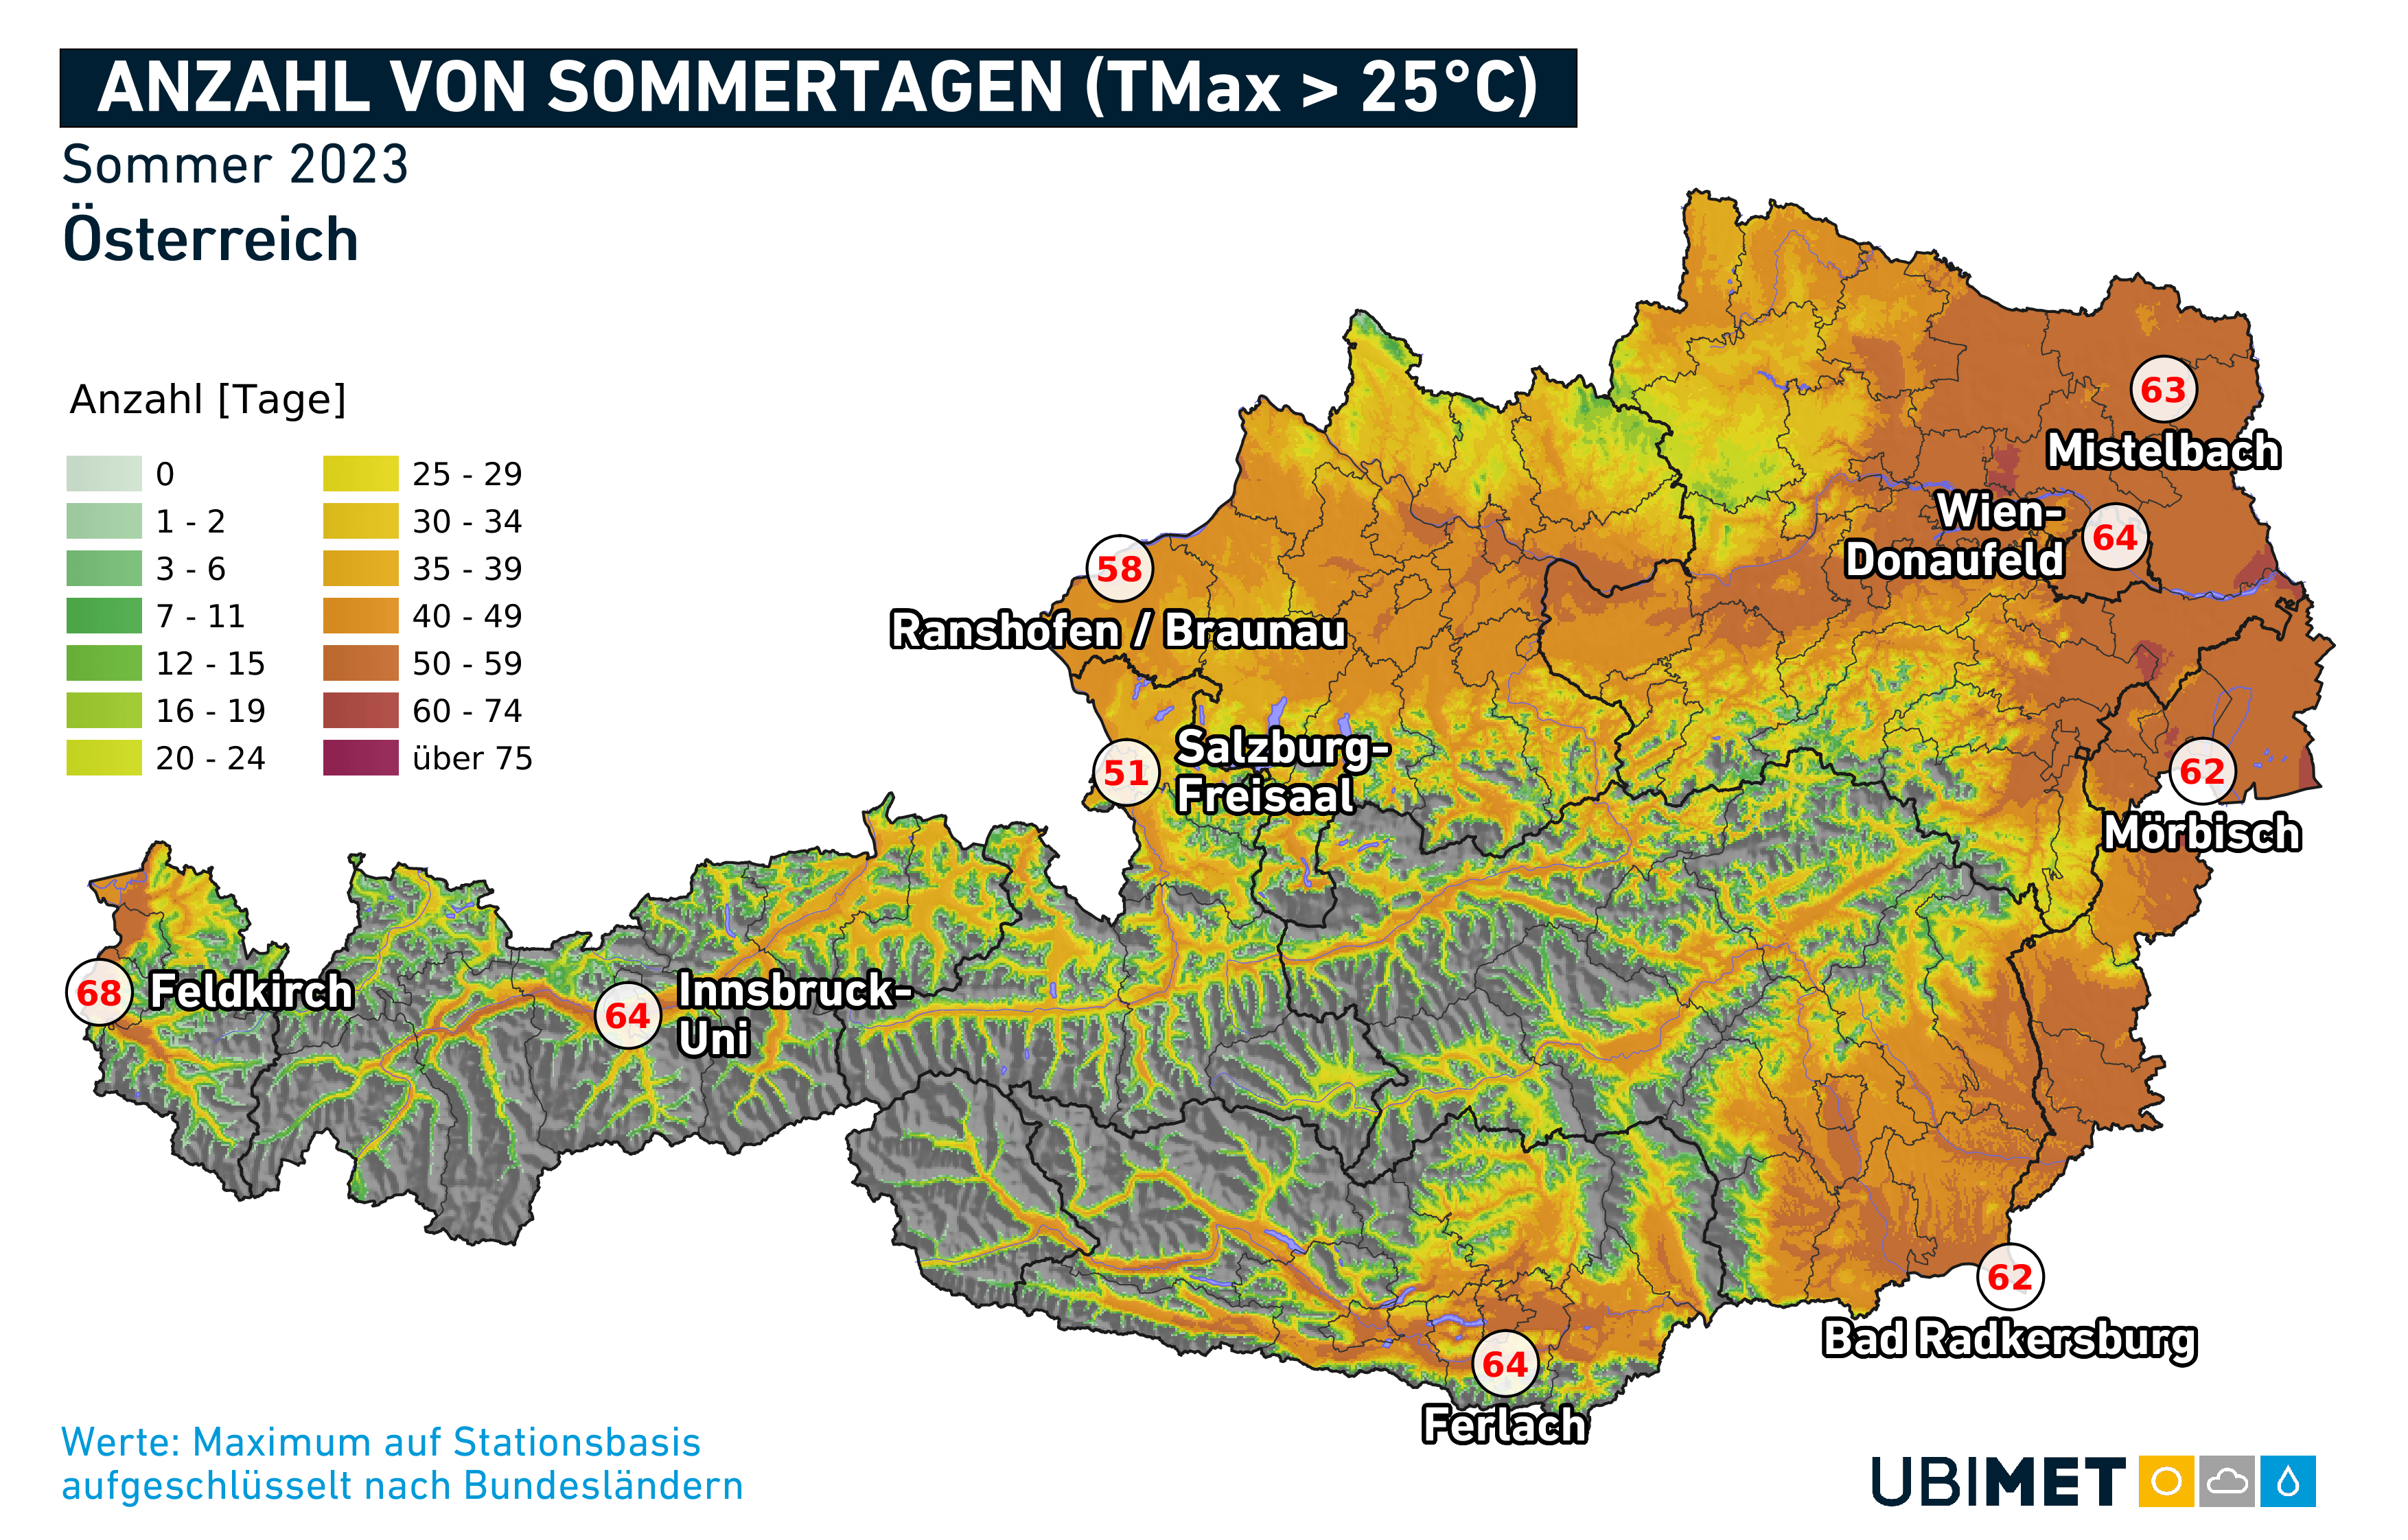 Anzahl der Sommertage in Österreich im Sommer 2023 - UBIMET